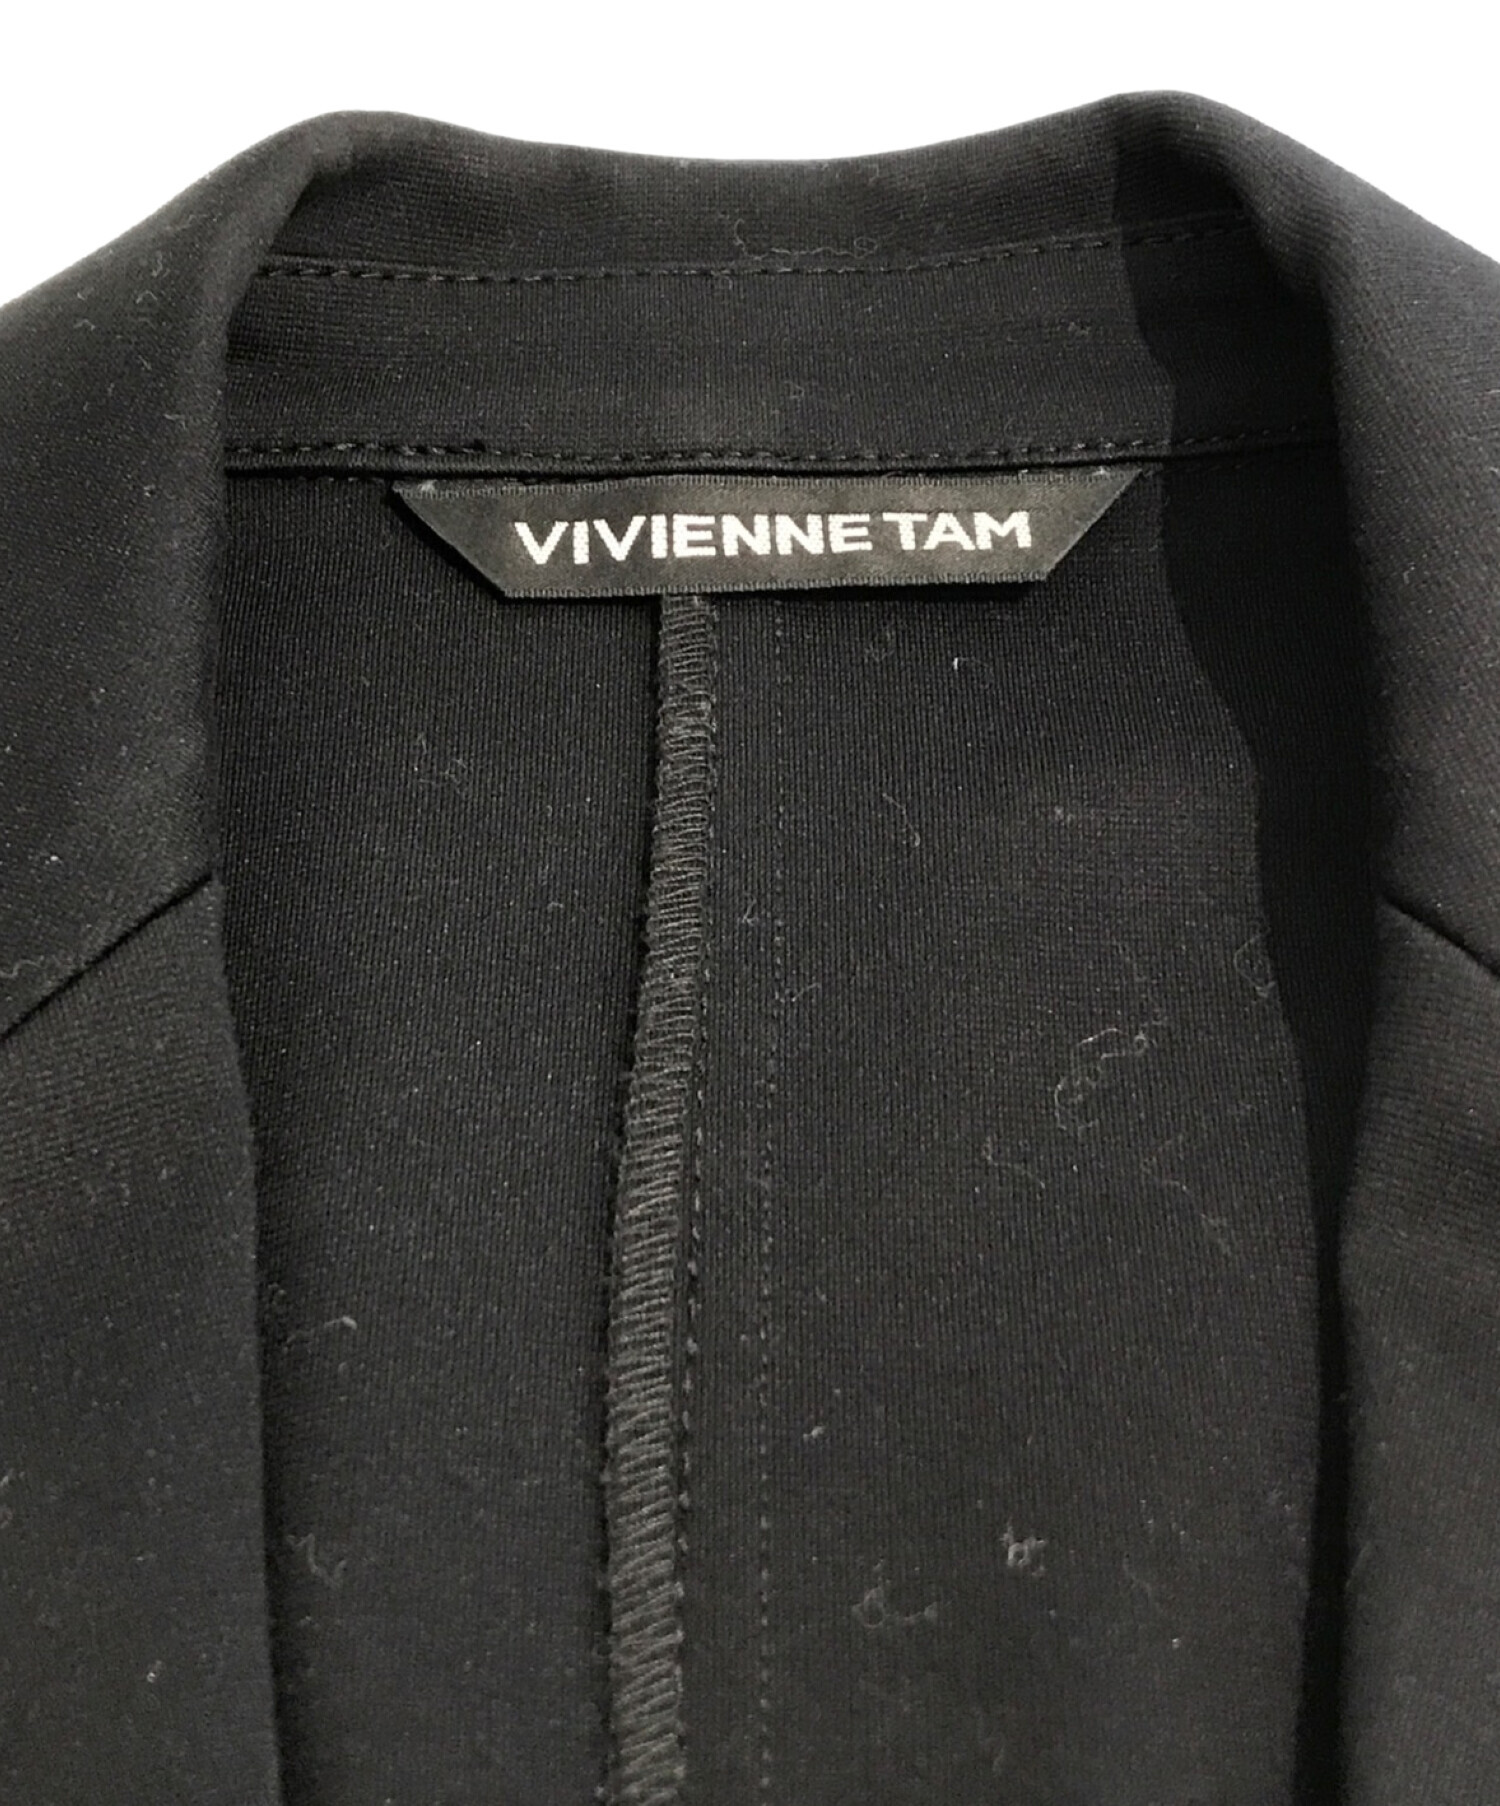 VIVIENNE TAM (ヴィヴィアンタム) ジャケット ブラック